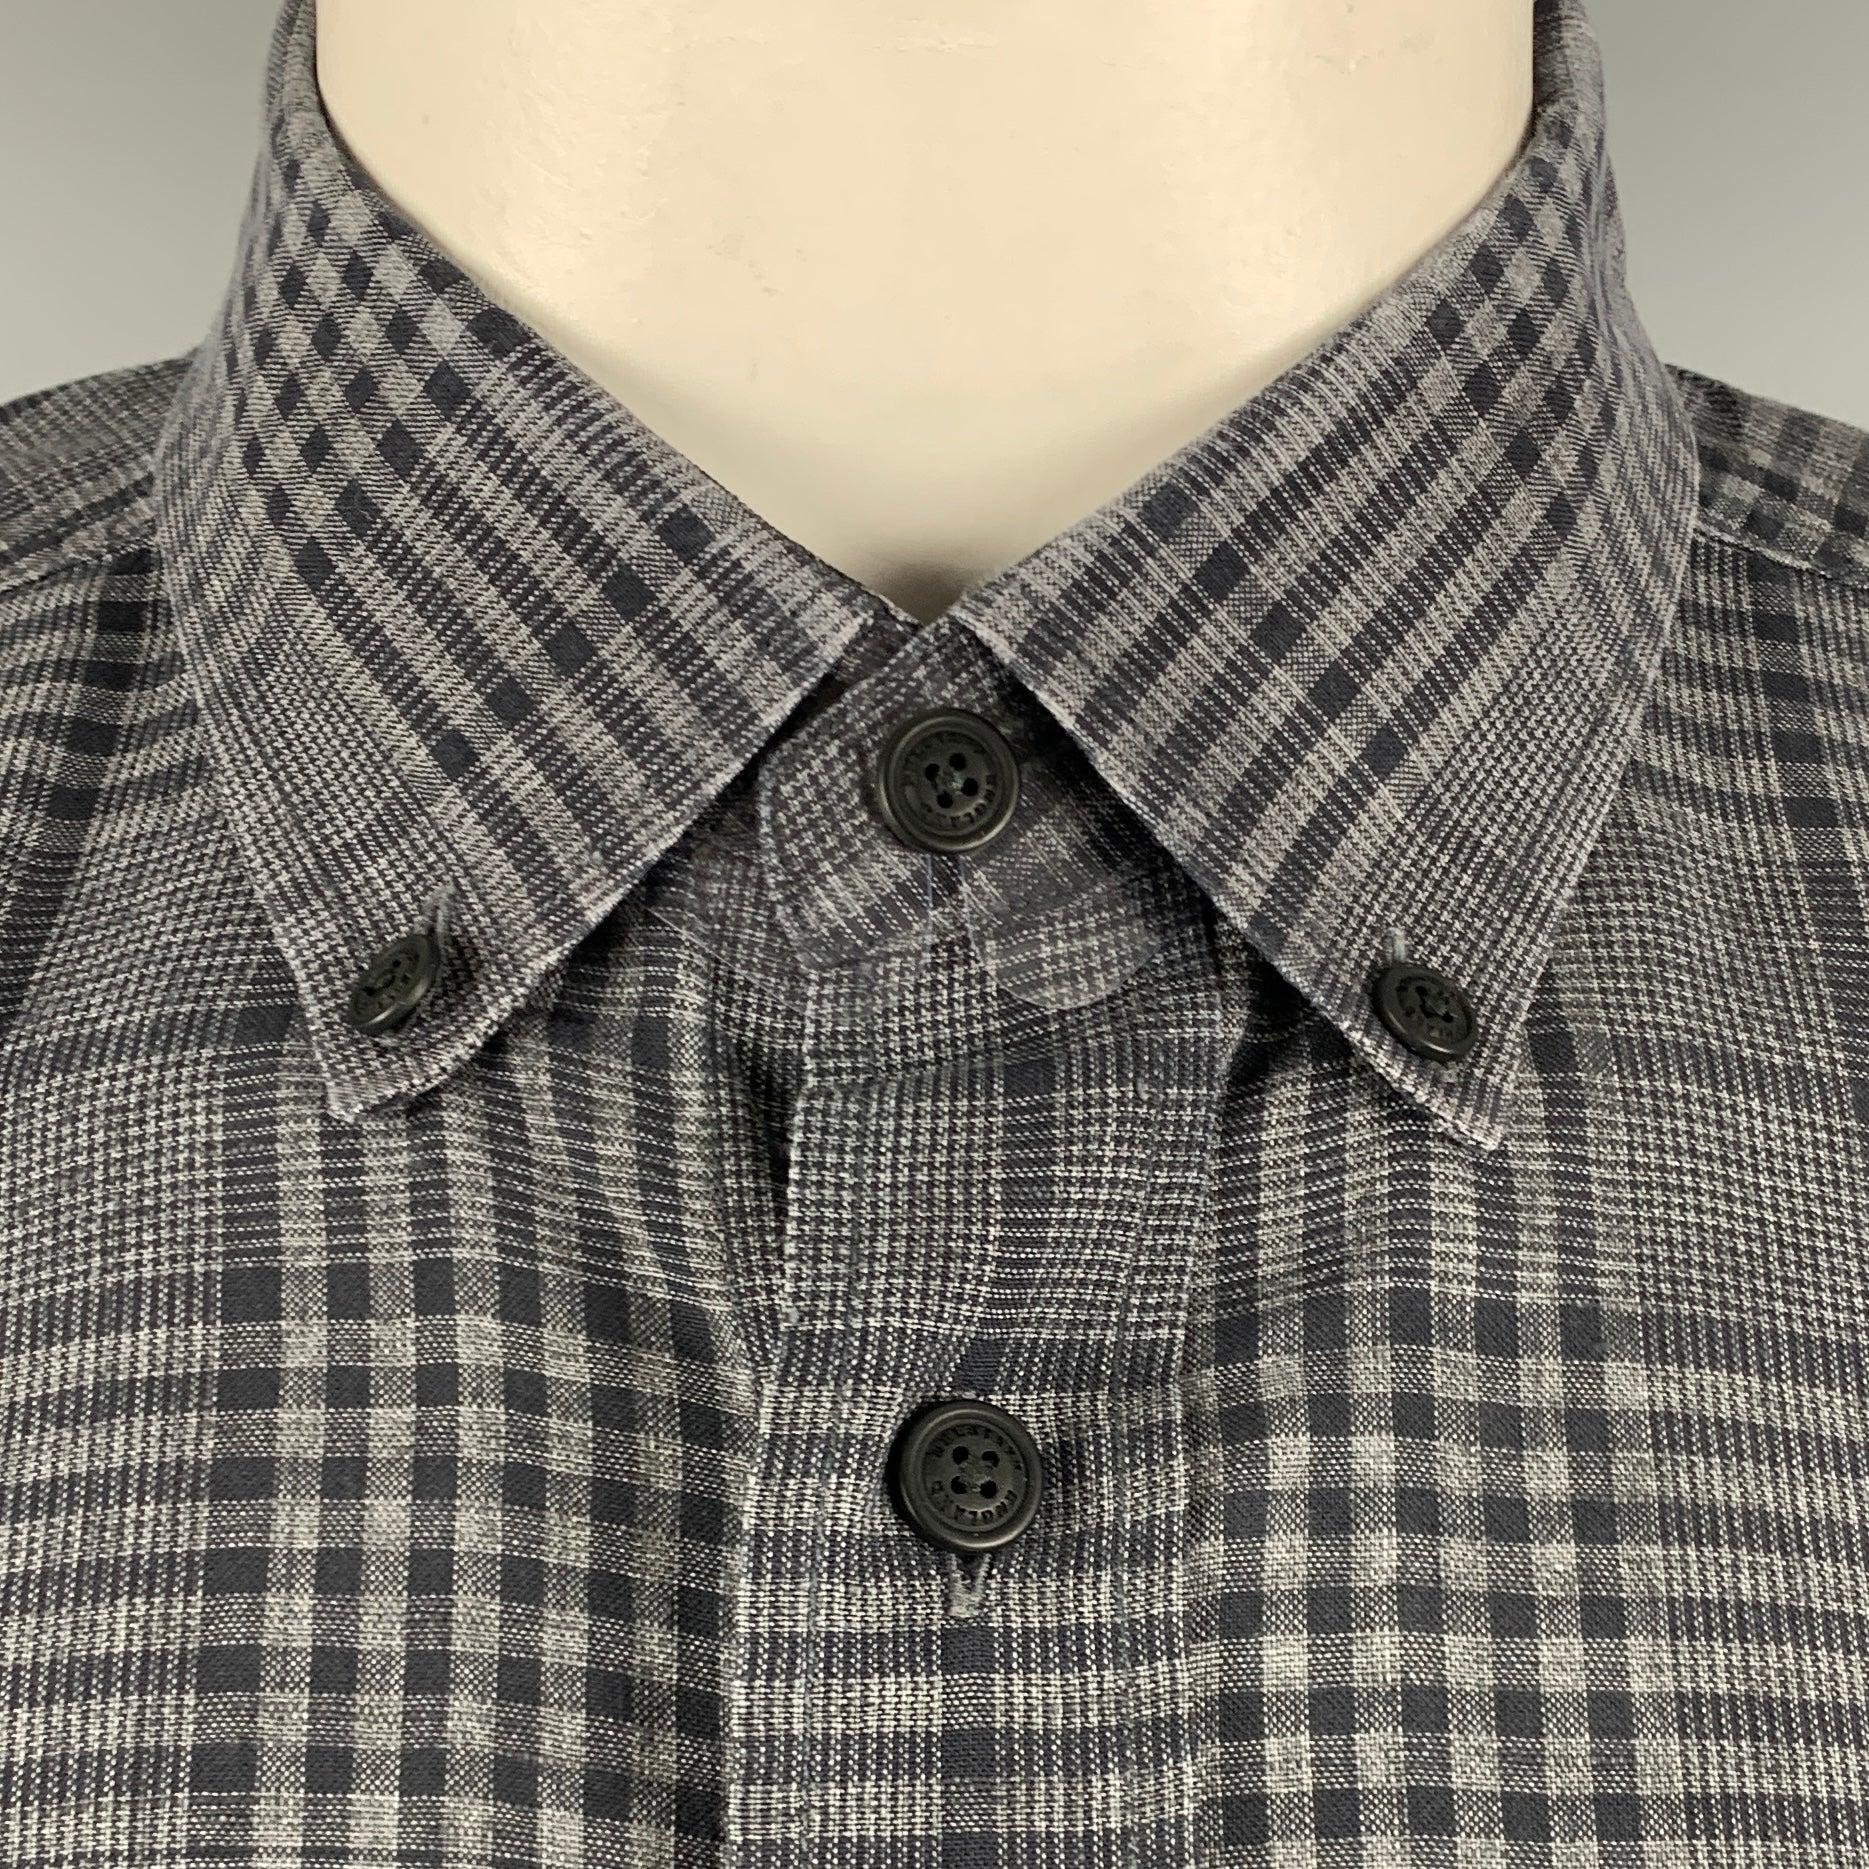 Chemise à manches longues Belstaff
en tissu tissé de lin et de coton mélangés gris et noir, avec un motif à carreaux, une poche boutonnée, un col boutonné et une fermeture à boutons.Très bon état d'occasion. Signes mineurs d'usure. 

Marqué :   L